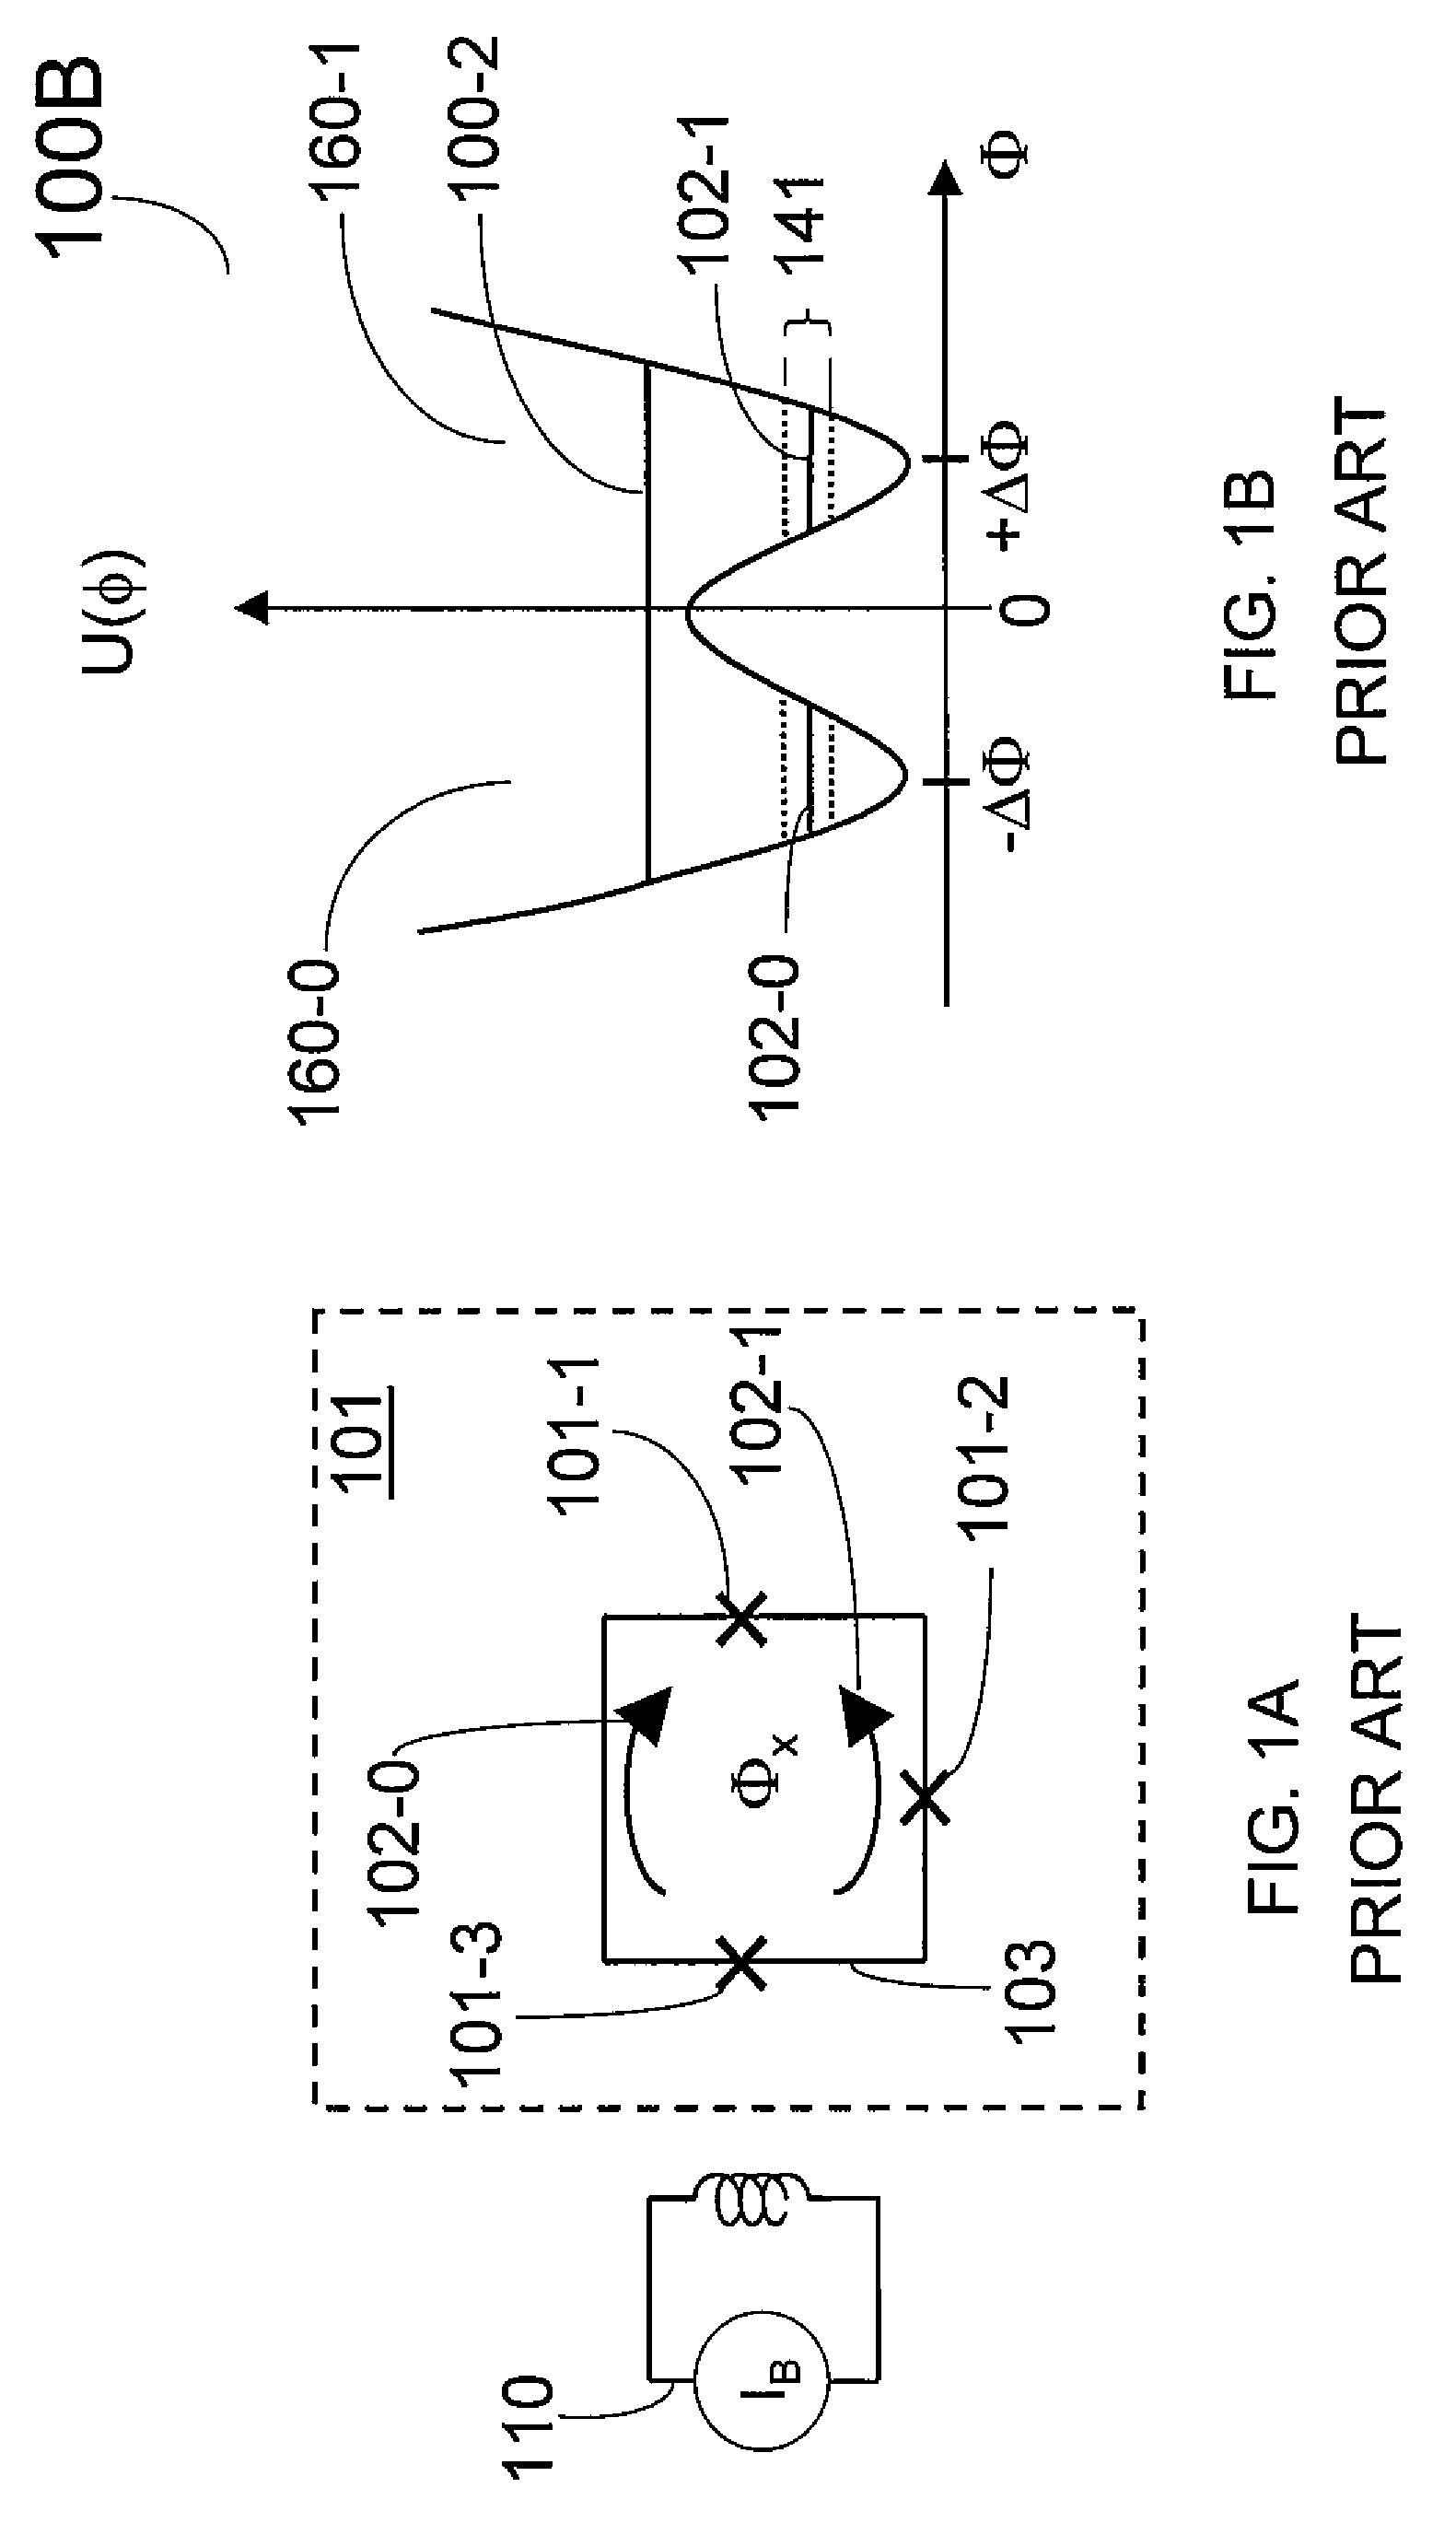 Method for adiabatic quantum computing comprising of Hamiltonian scaling